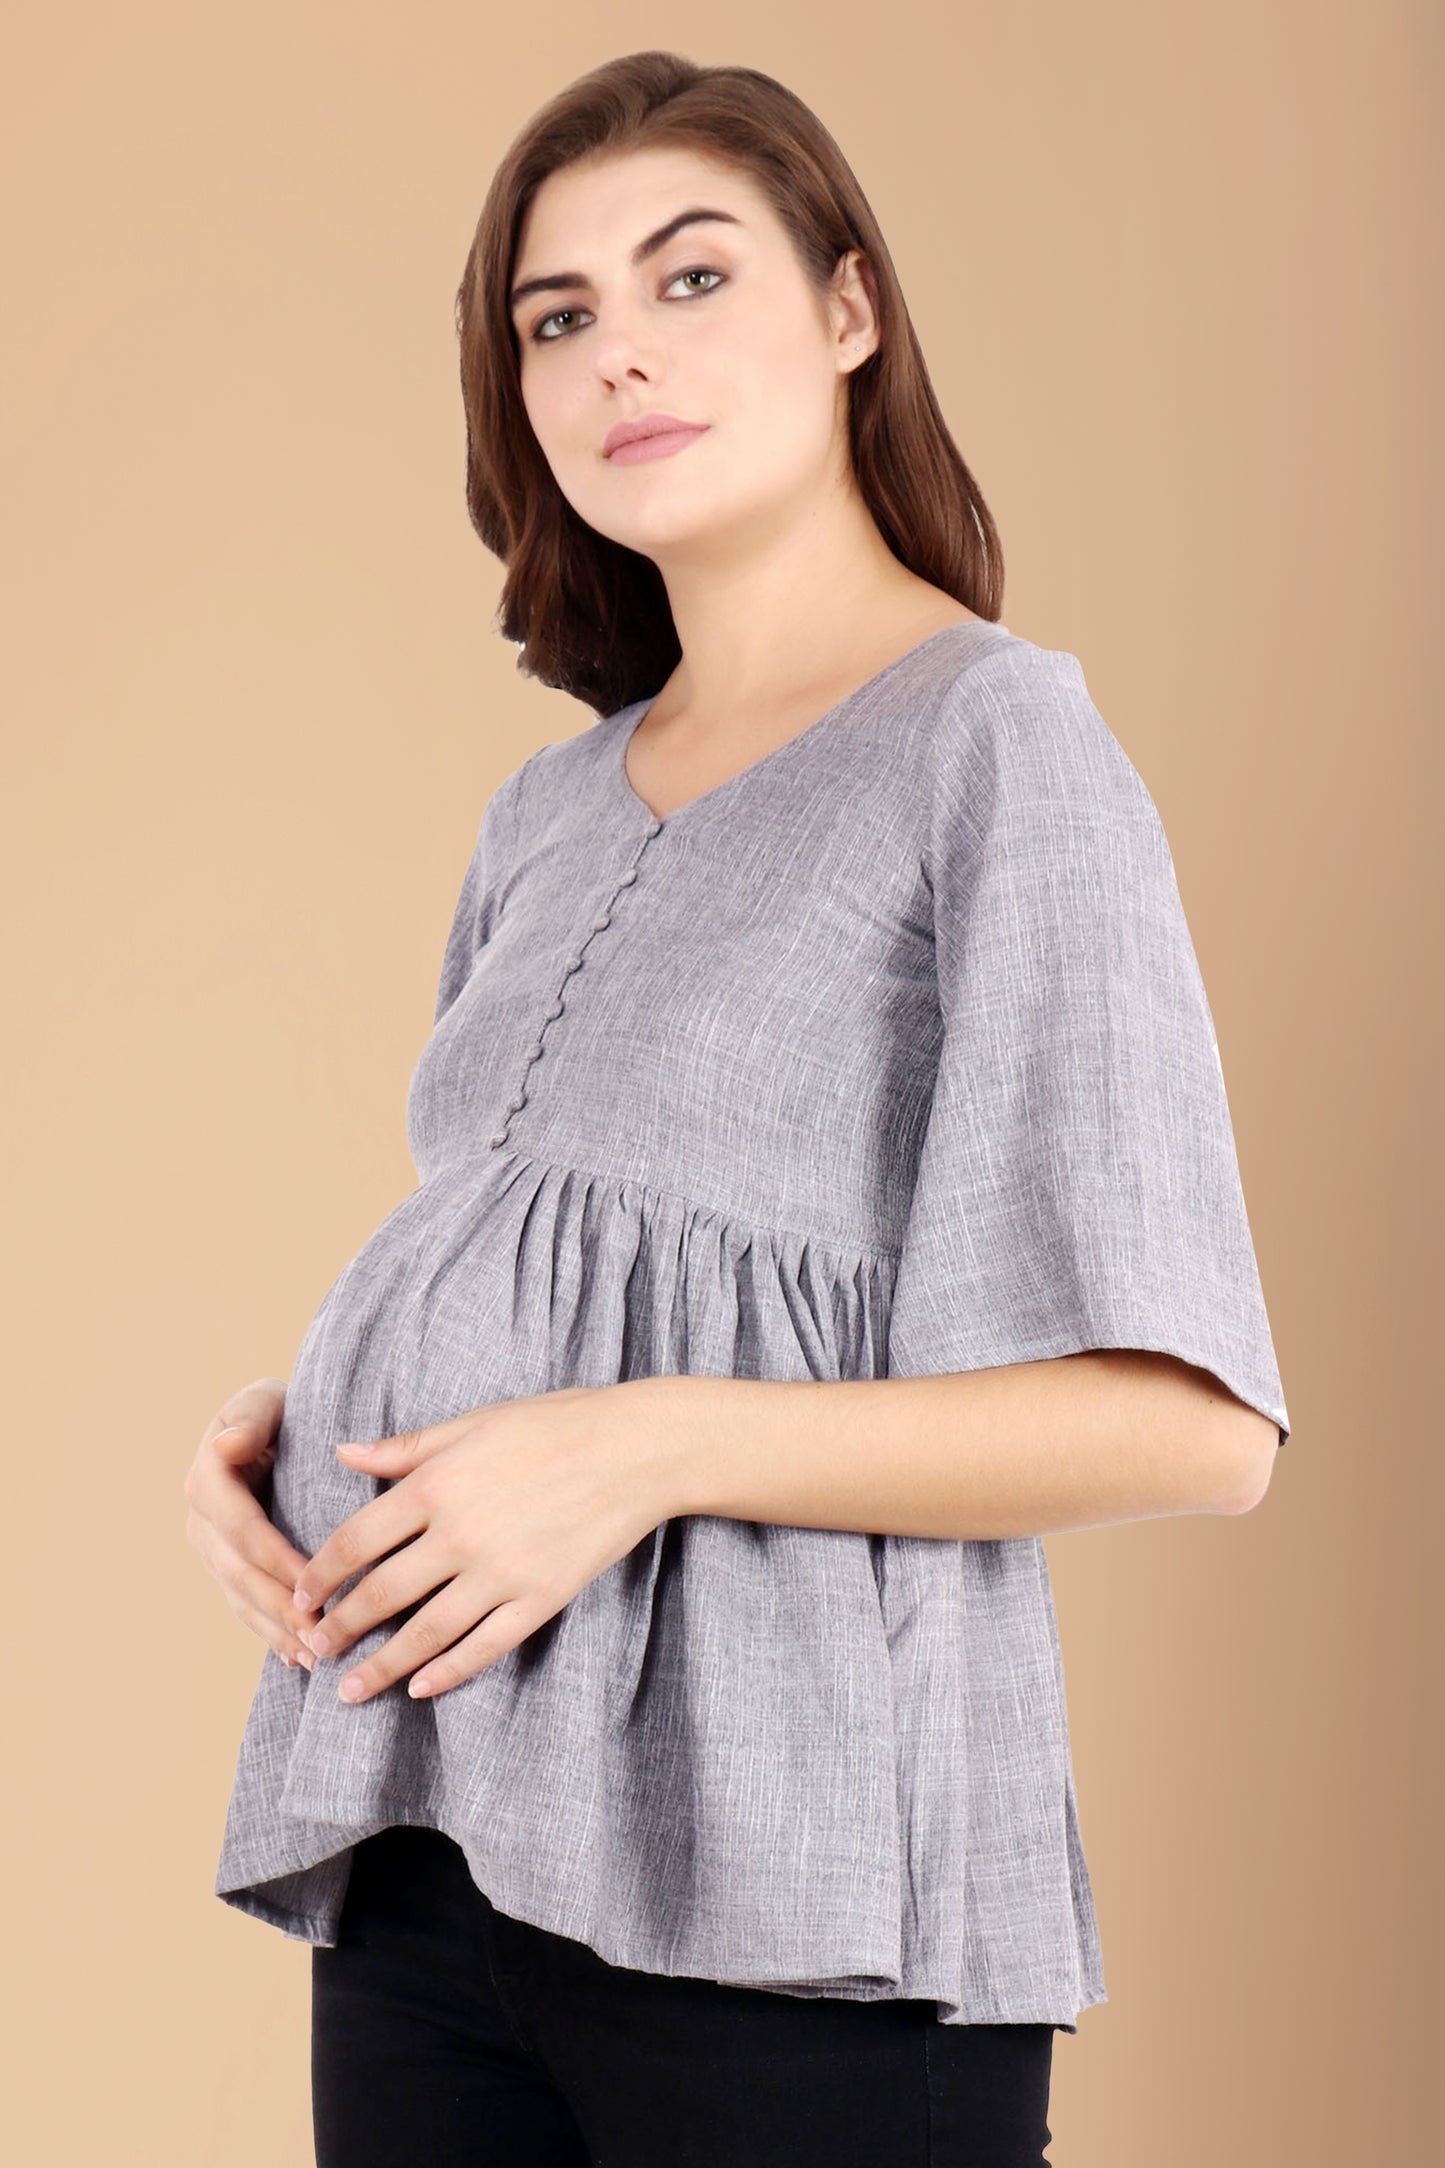 Maternity Wear